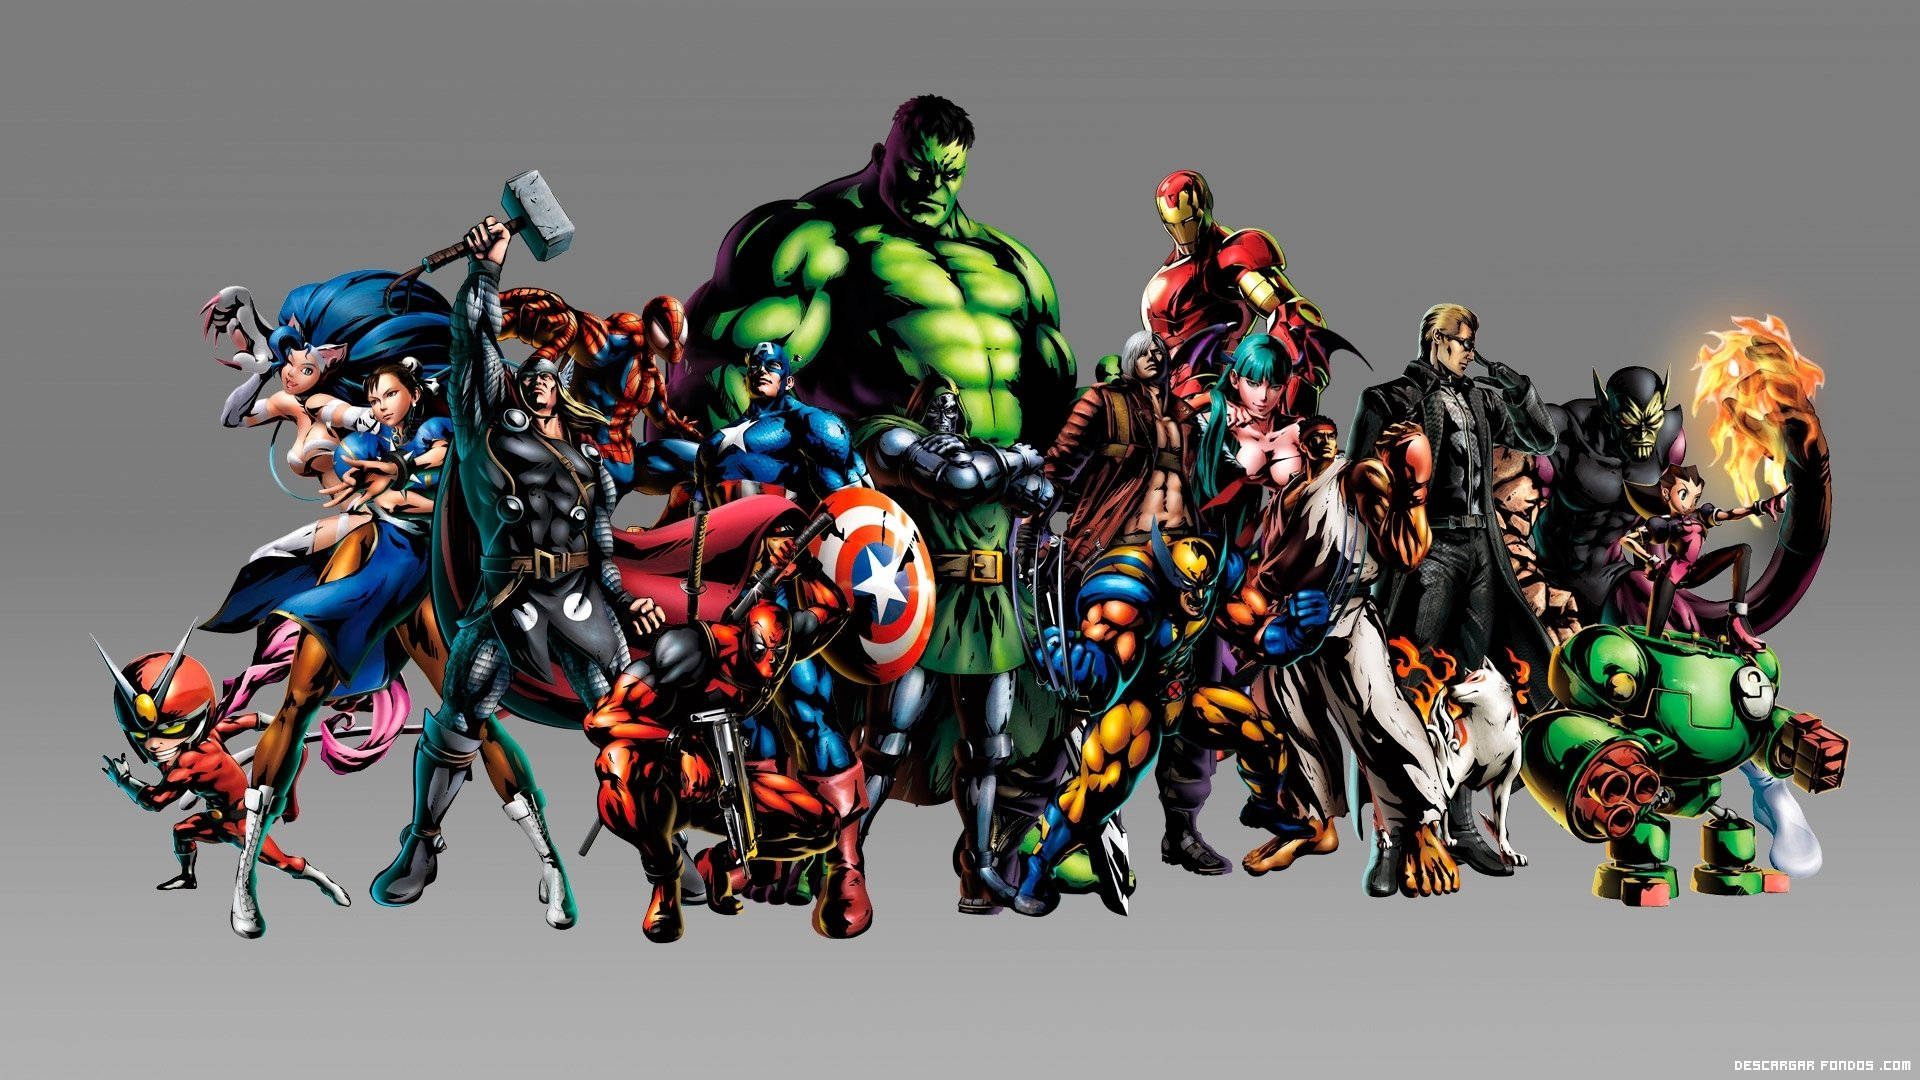 Caption: Asserting Dominance - Marvel's Avengers Assemble Wallpaper